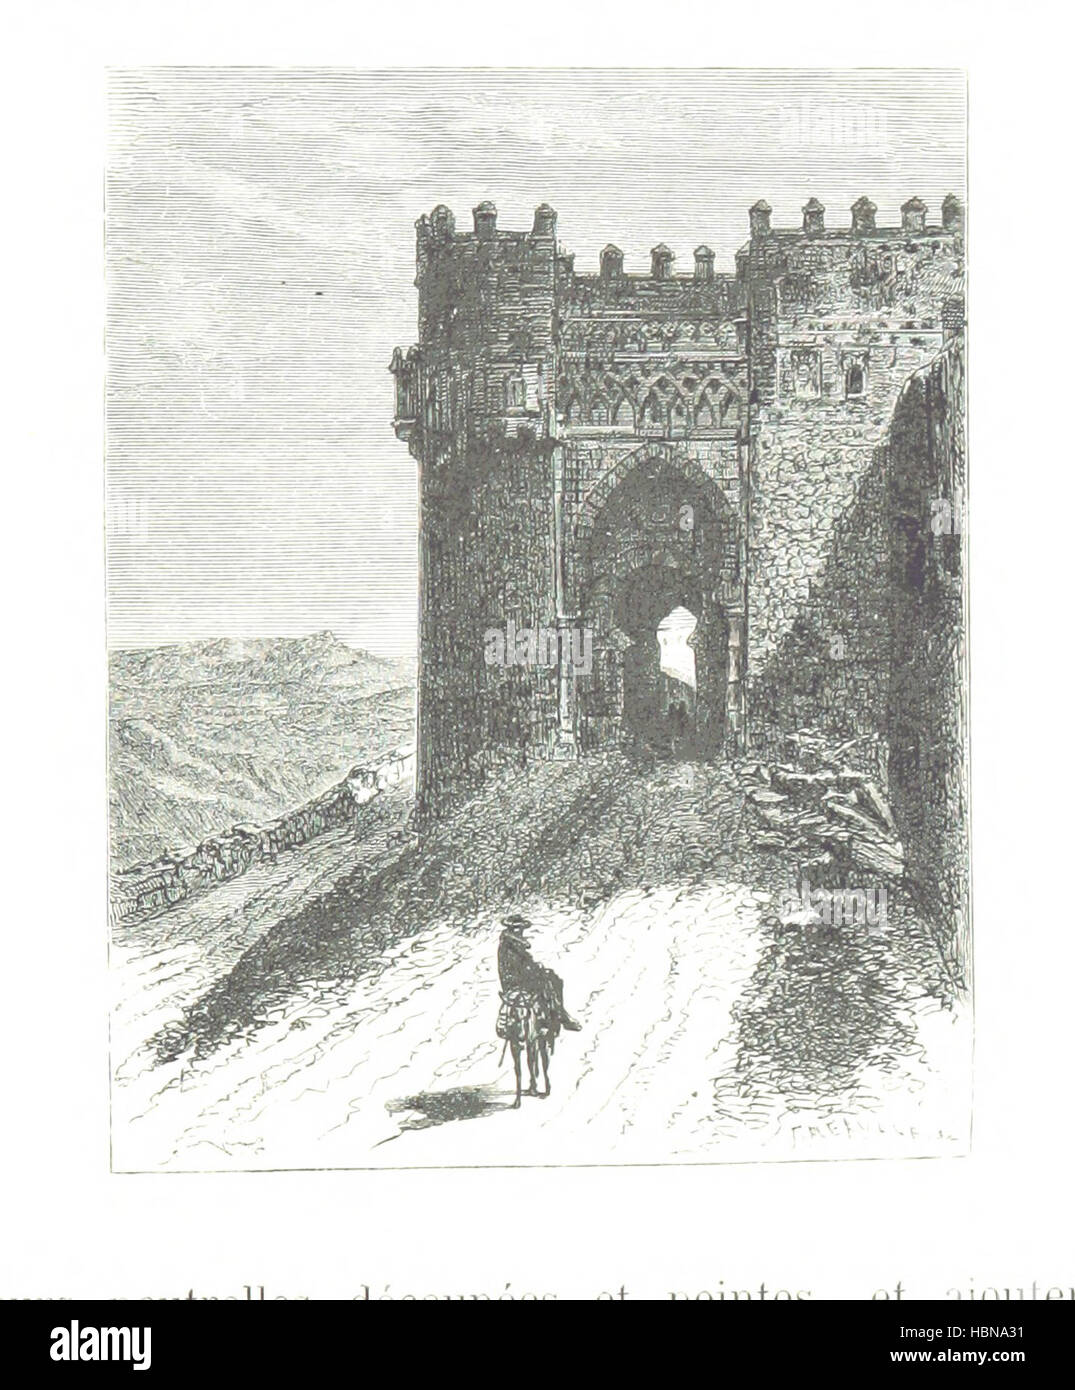 Image taken from page 391 of 'Voyage en Espagne ... Illustration par V. Foulquier' Image taken from page 391 of 'Voyage en Espagne Stock Photo